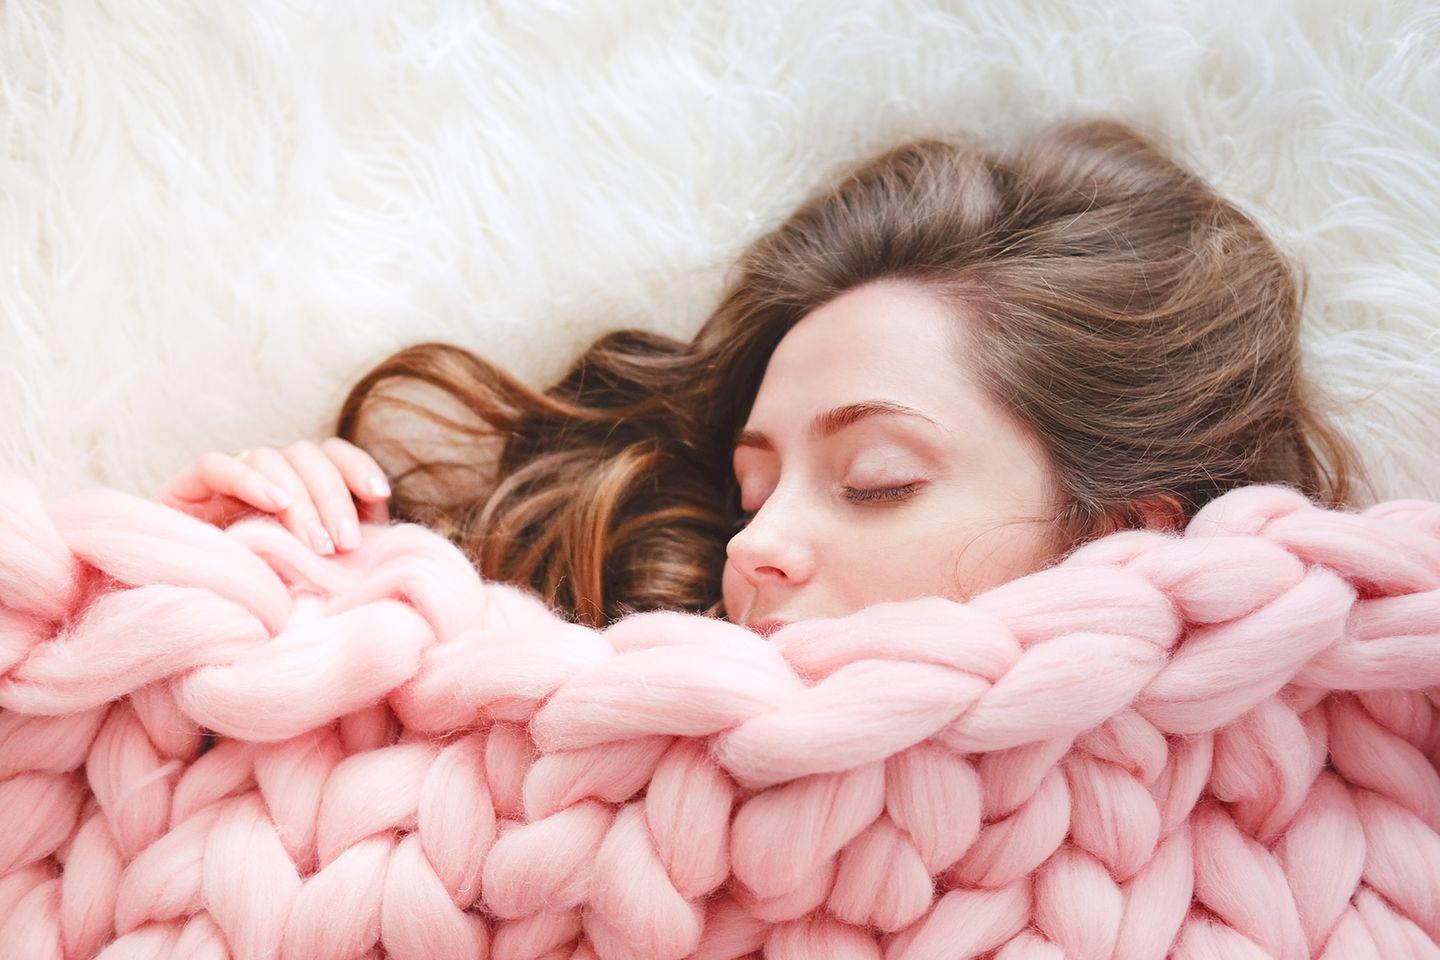 Das erklärt alles: Auch Menschen haben ein Winterschlaf-Gen